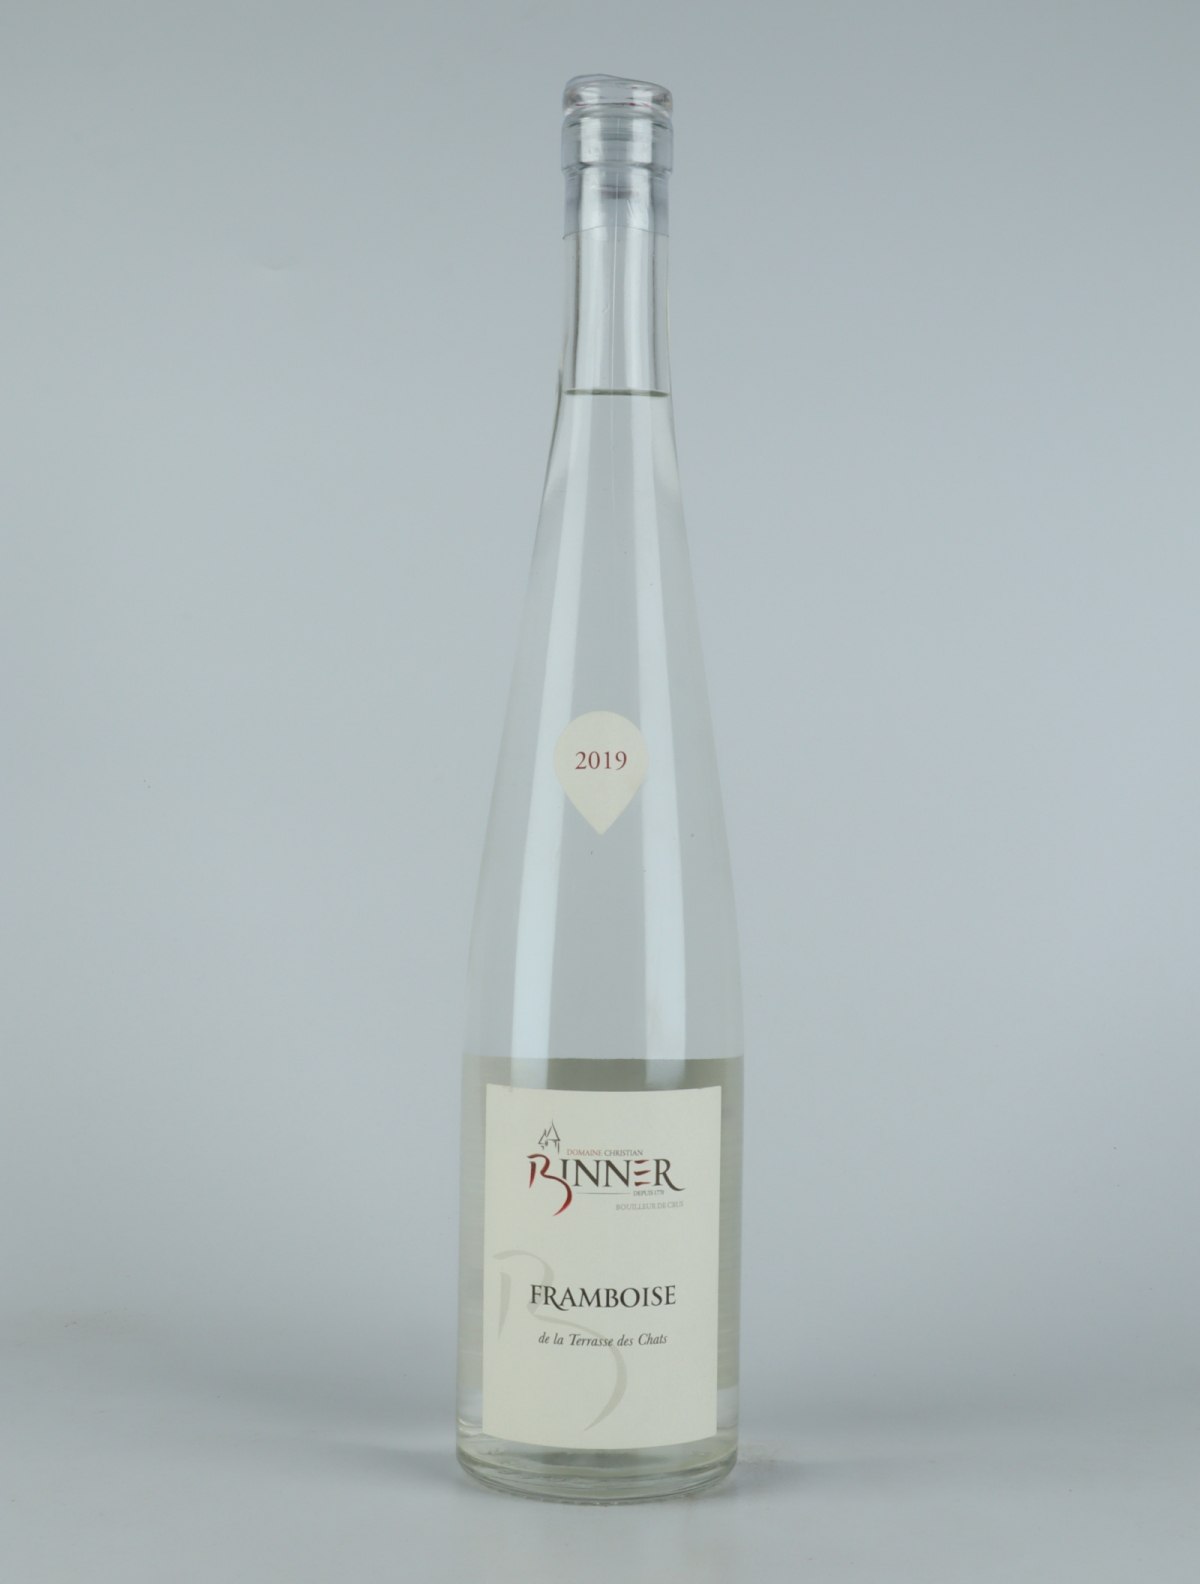 En flaske 2019 Framboise - Domaine Binner Spiritus fra Domaine Christian Binner, Alsace i Frankrig